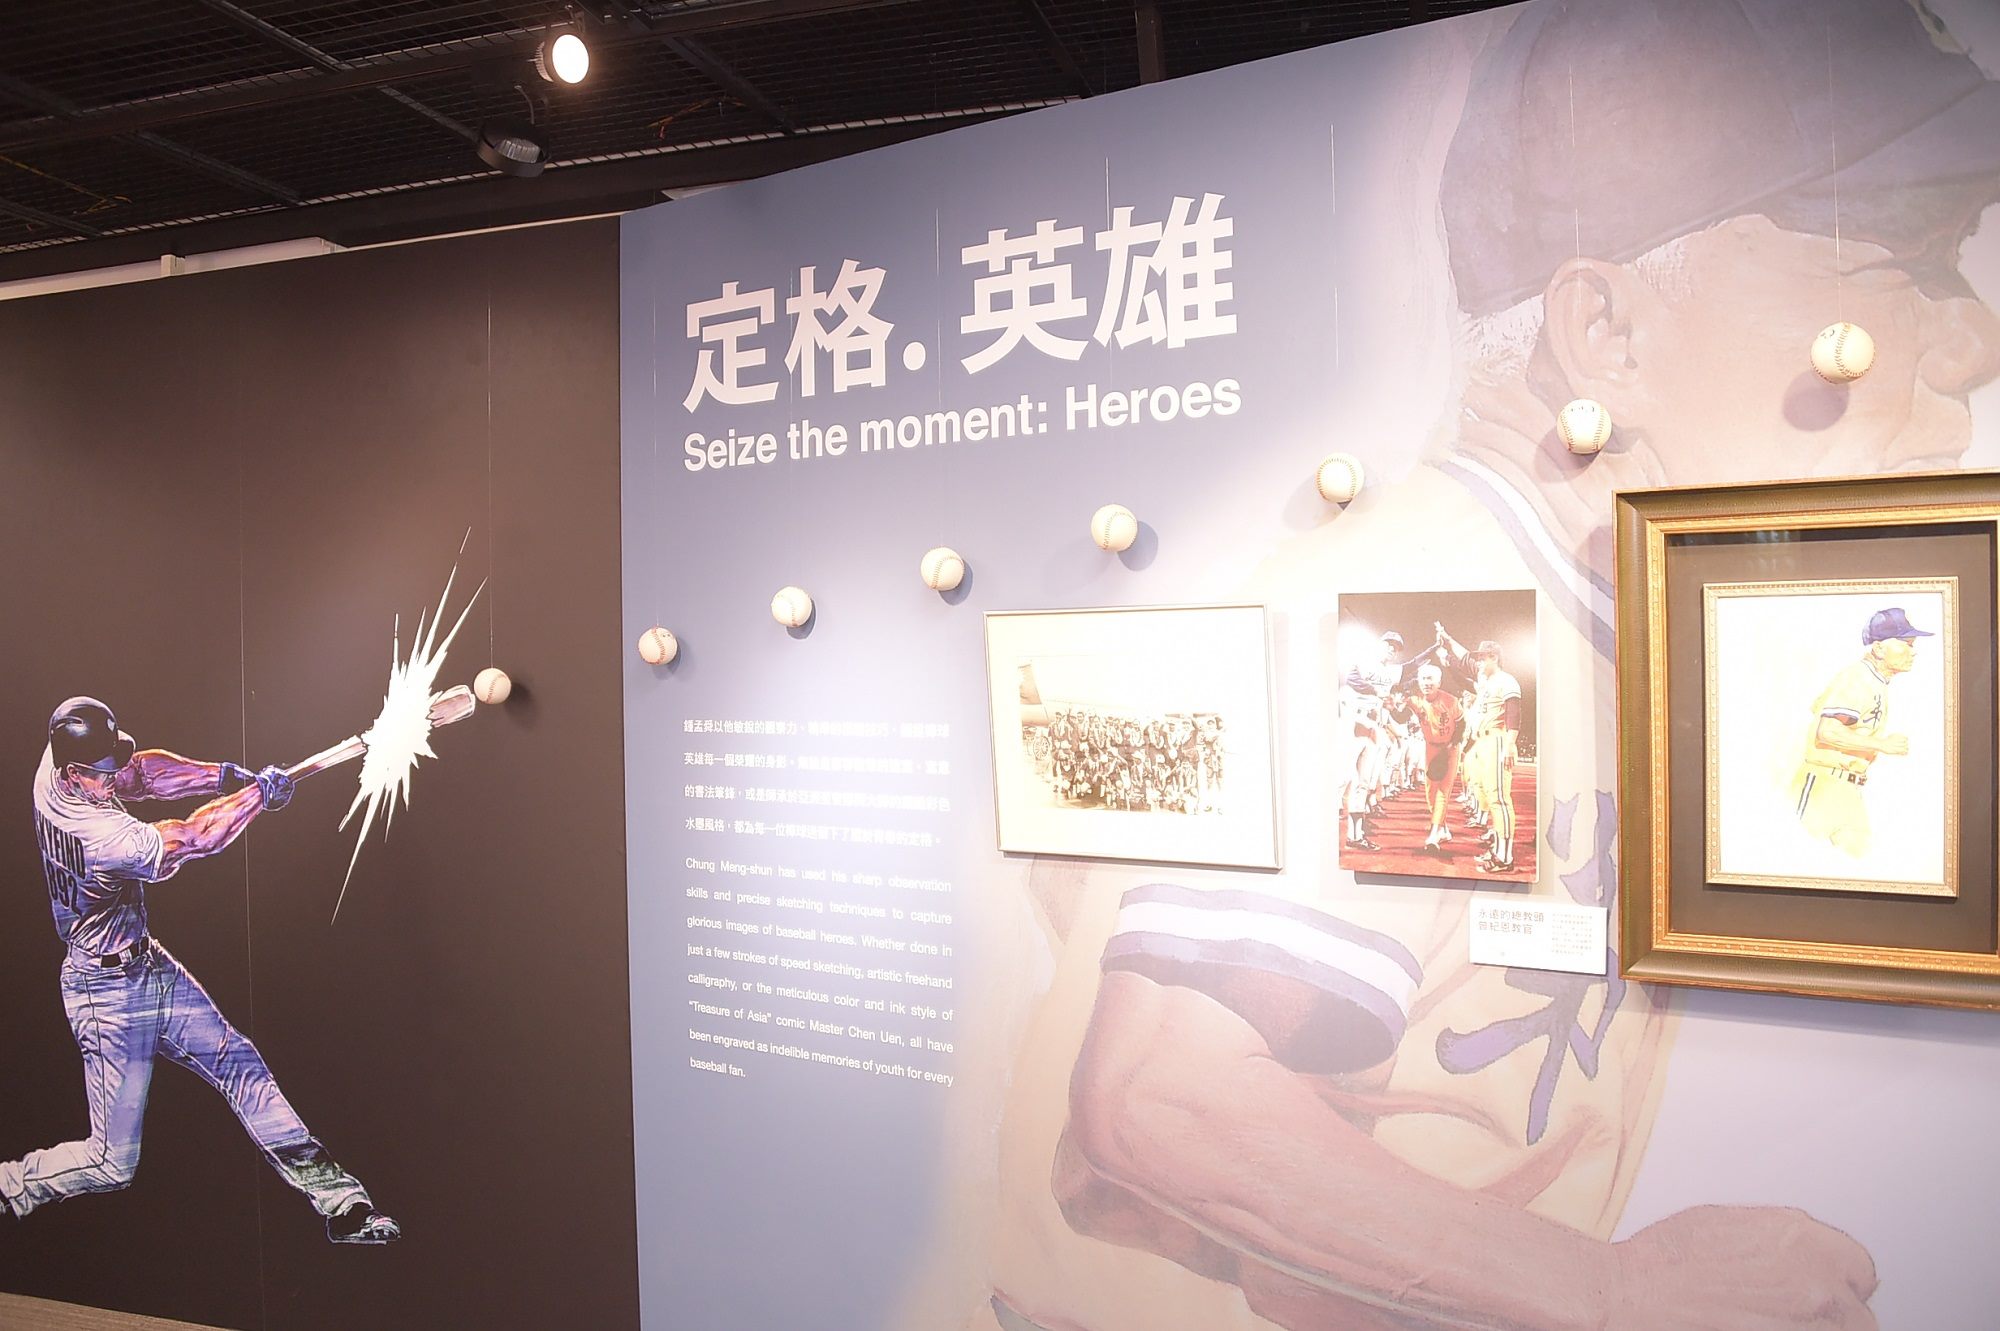 野球风云录特展展出漫画家锺孟舜「职棒英雄」的主题漫画展。